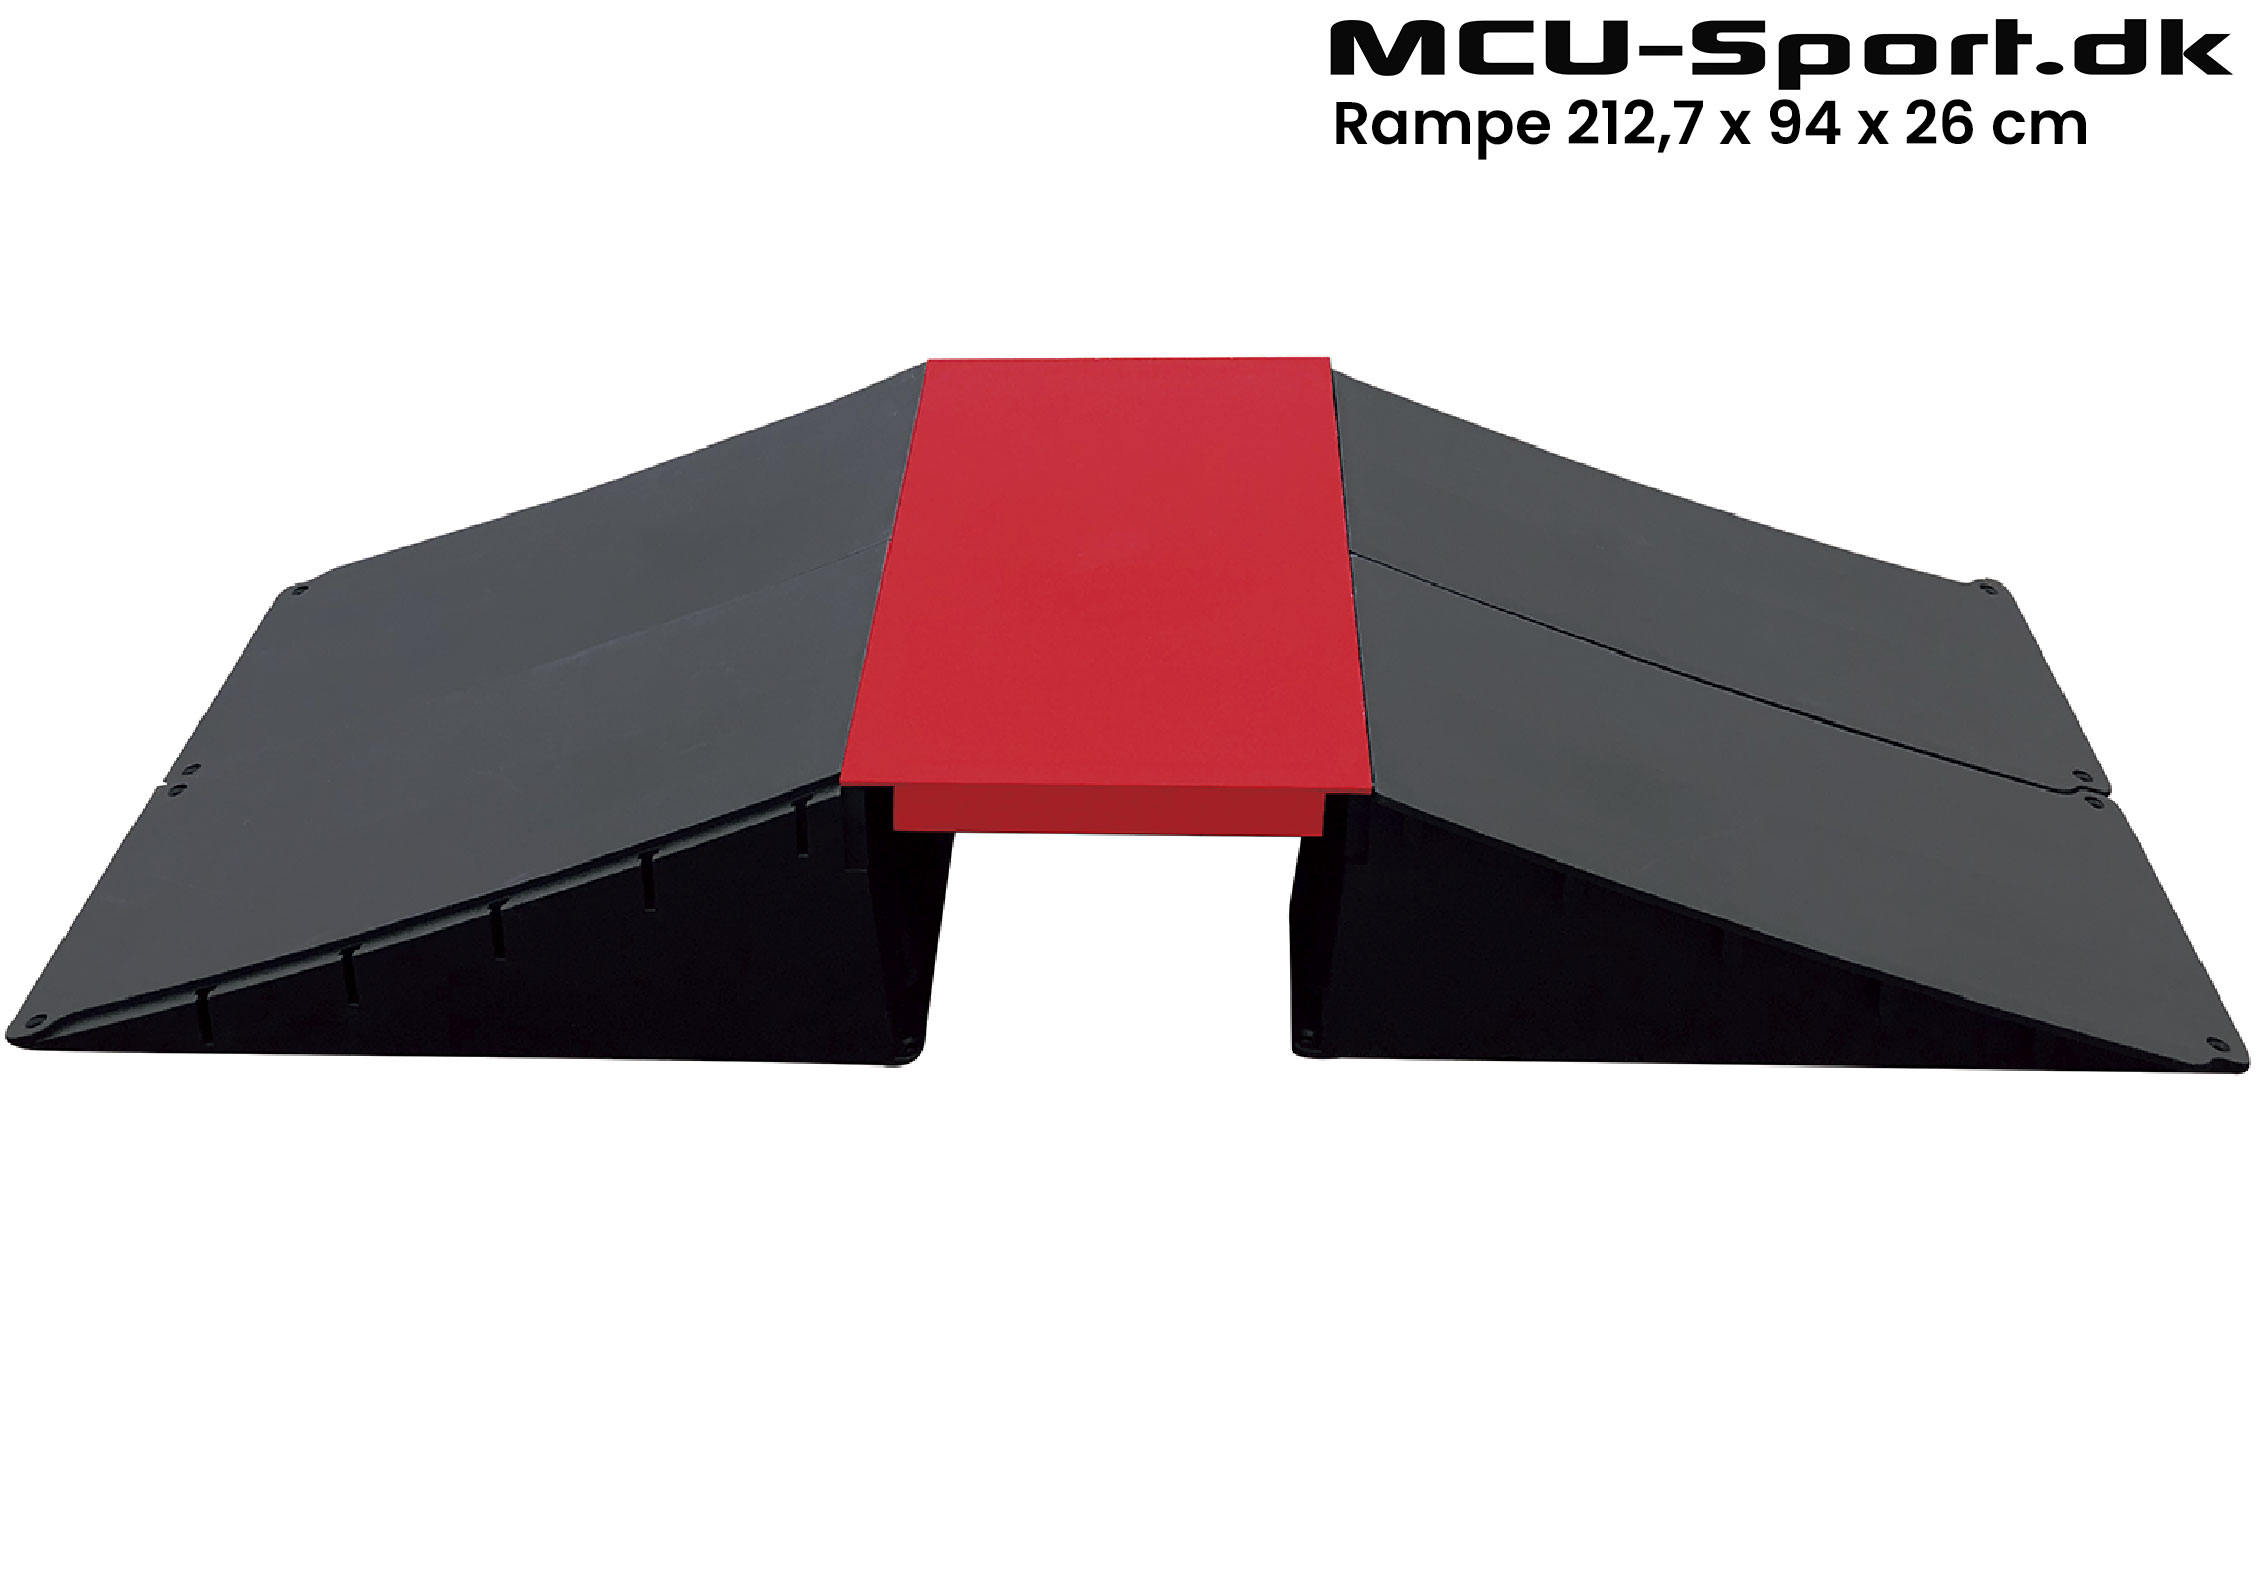 Billede af MCU-Sport Skate Rampe sæt 212,7 x 94 x 26 cm